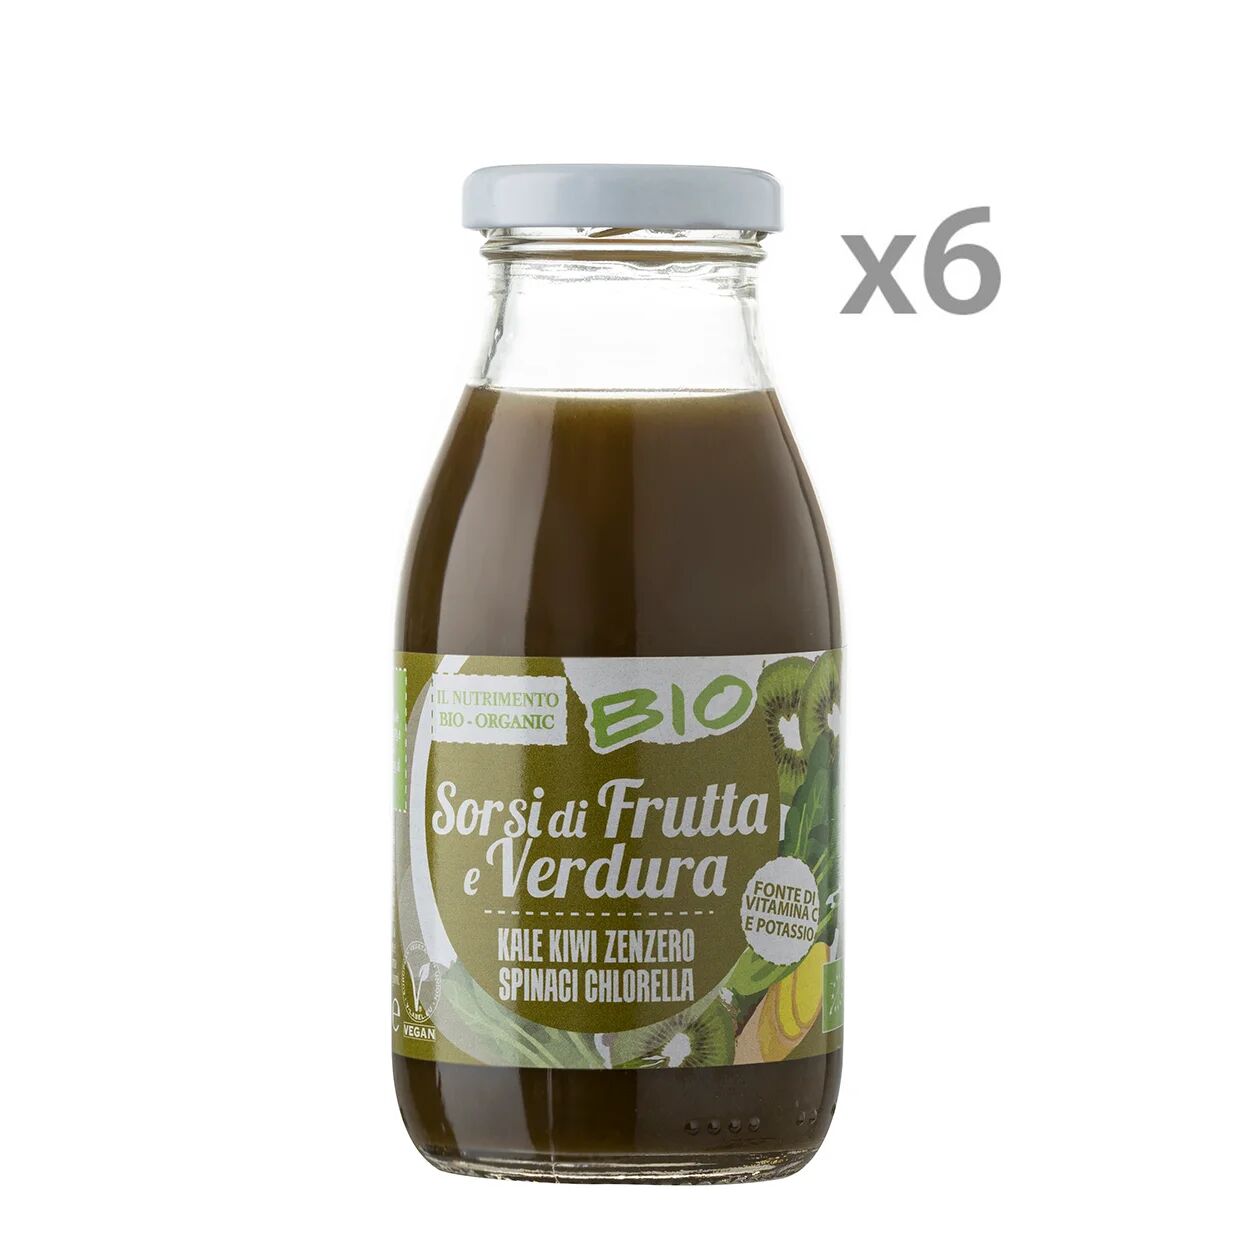 Probios 6 bottigliette - Smoothies BIO Kale, Kiwi, Zenzero, Spinaci e Chlorella 250 ml